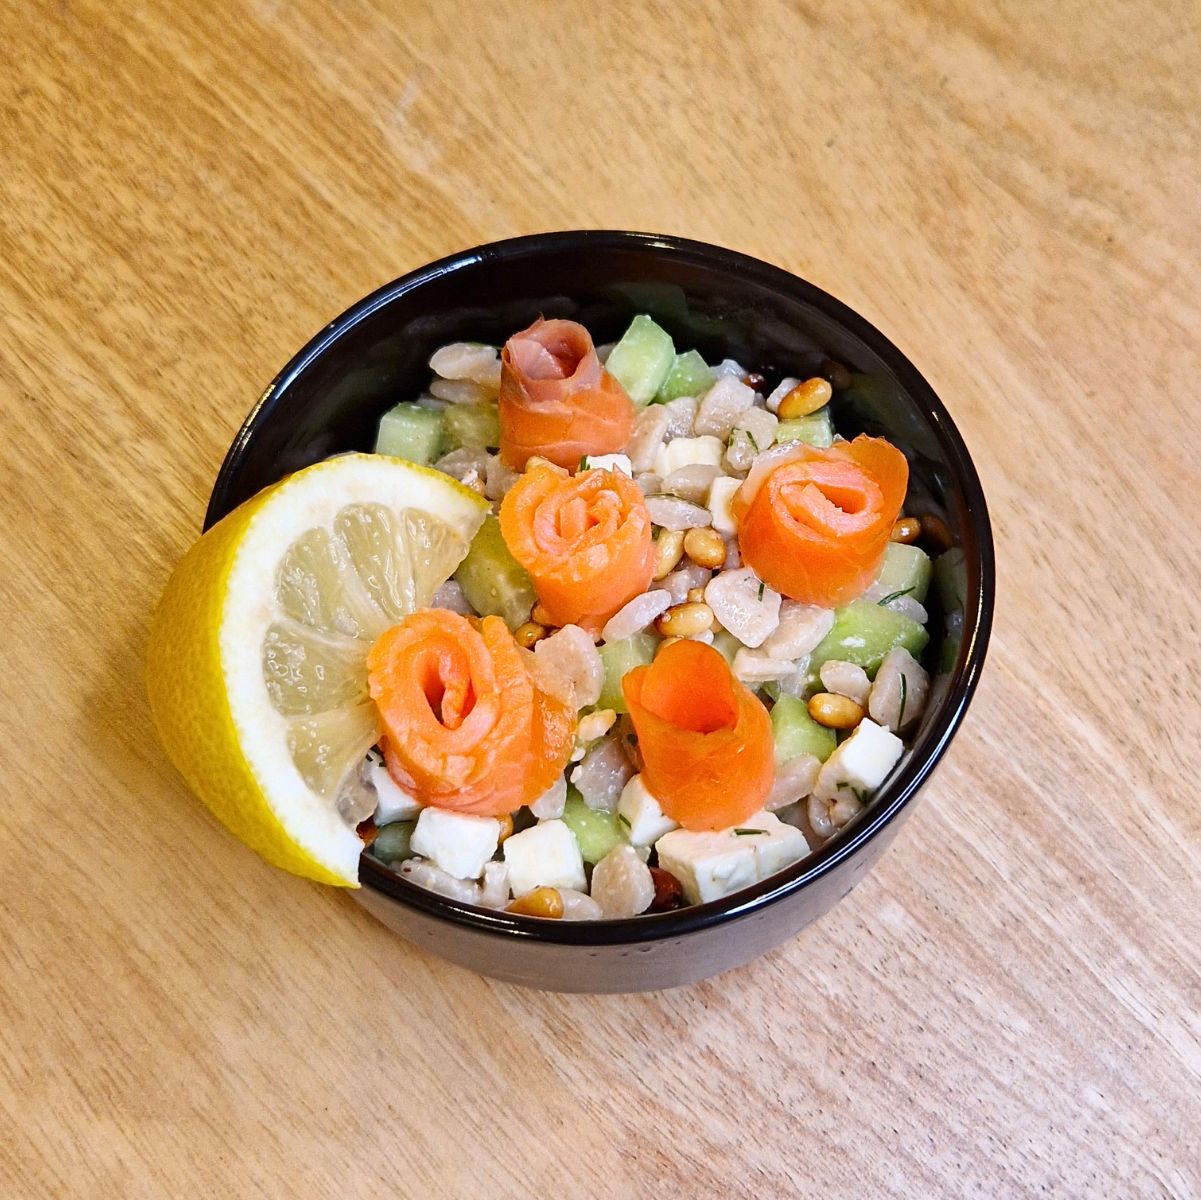 Salade de pâtes - Crozets au saumon fumé